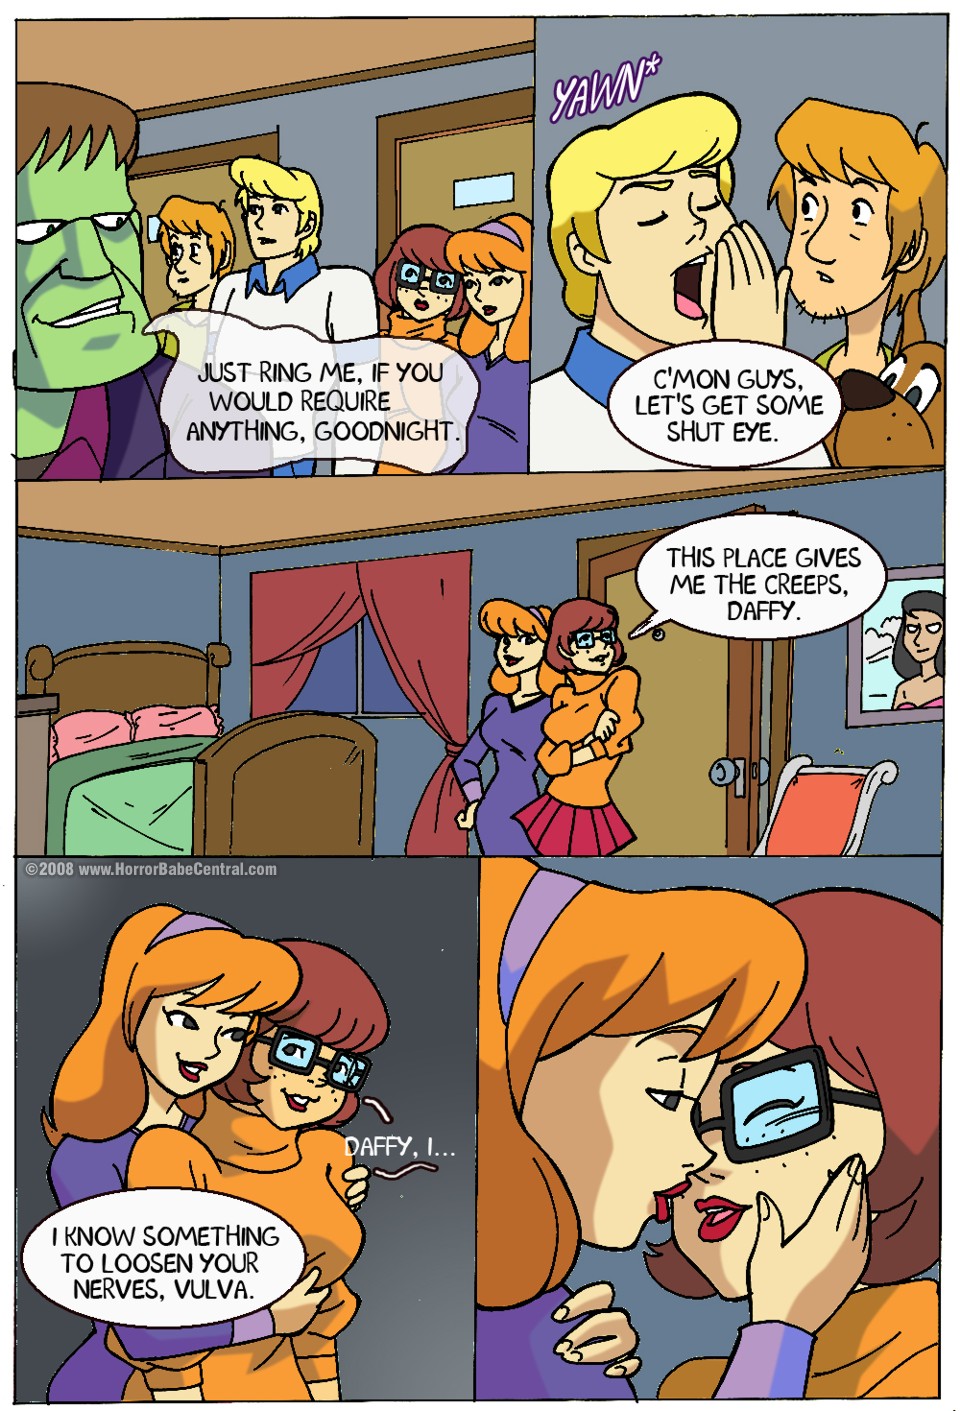 Cartoon Scooby Doo Nude - scooby doo porn comics all heroes in action 1 - XXXPicz